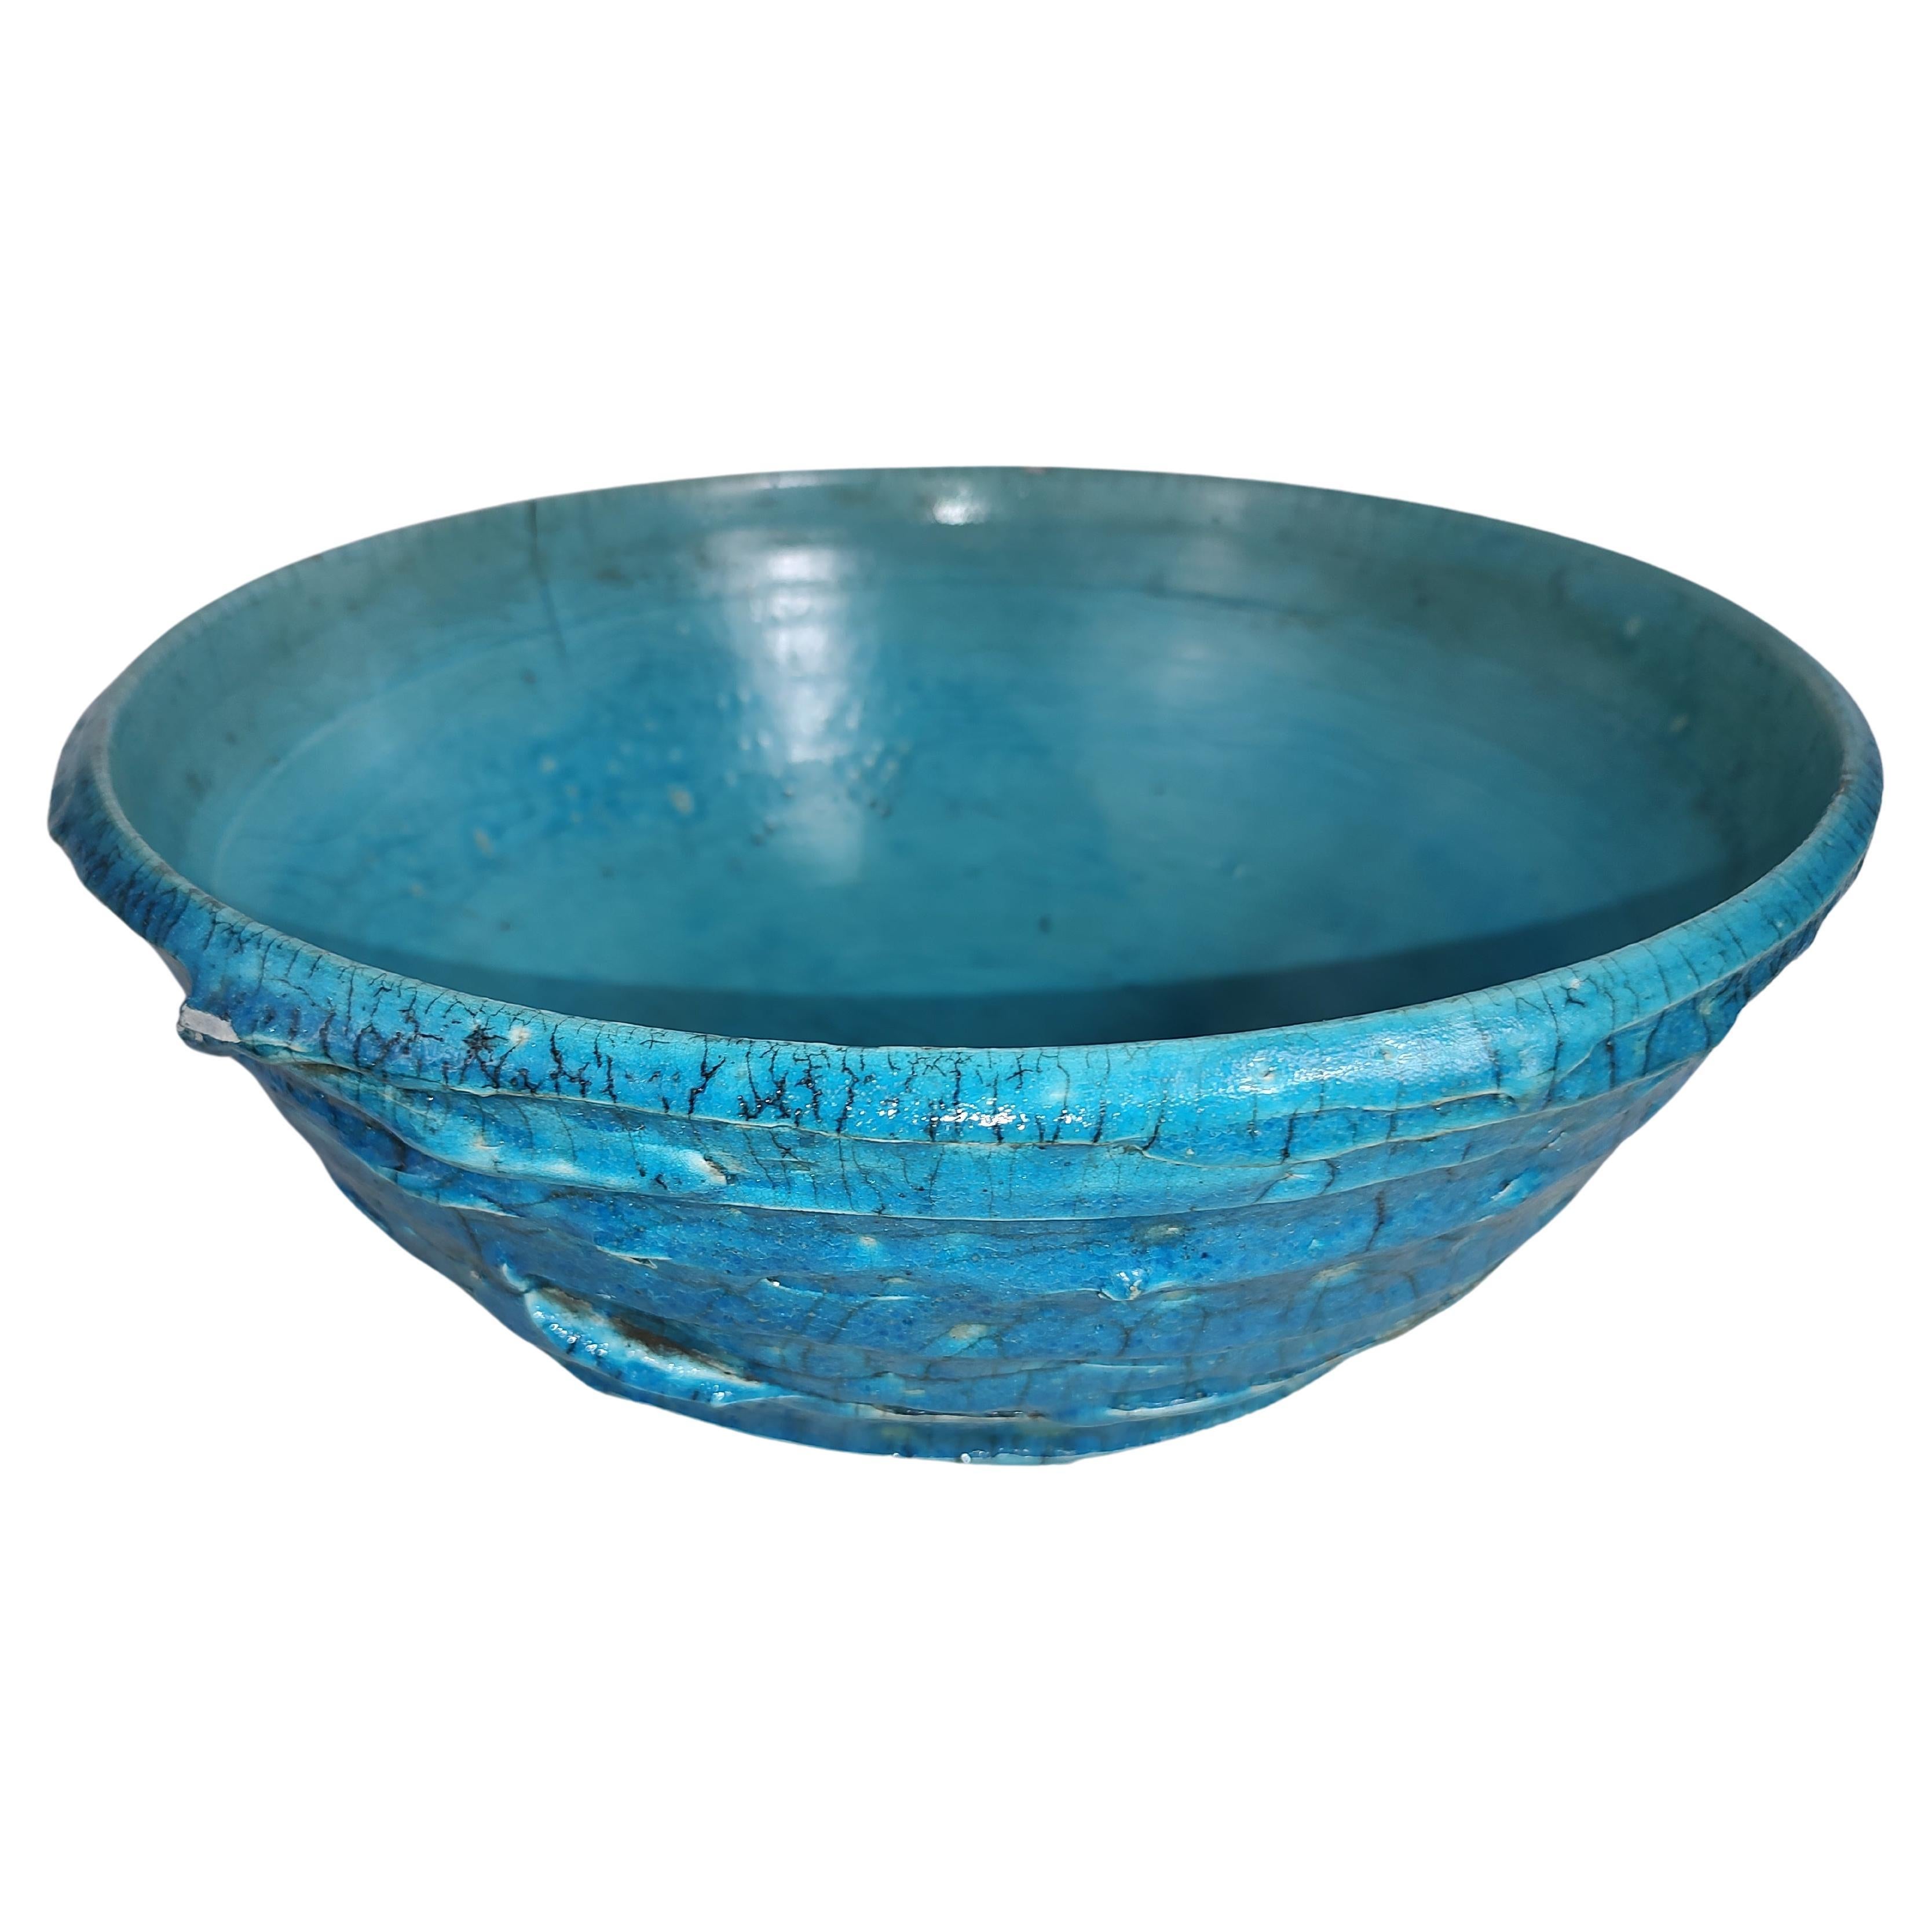 Des couleurs bleues fantastiques et une texture fabuleuse. Ce grand bol est d'une grande beauté et peut servir à bien plus qu'une simple décoration. En excellent état vintage avec une usure minimale. Le craquement fait partie du design, il sonne